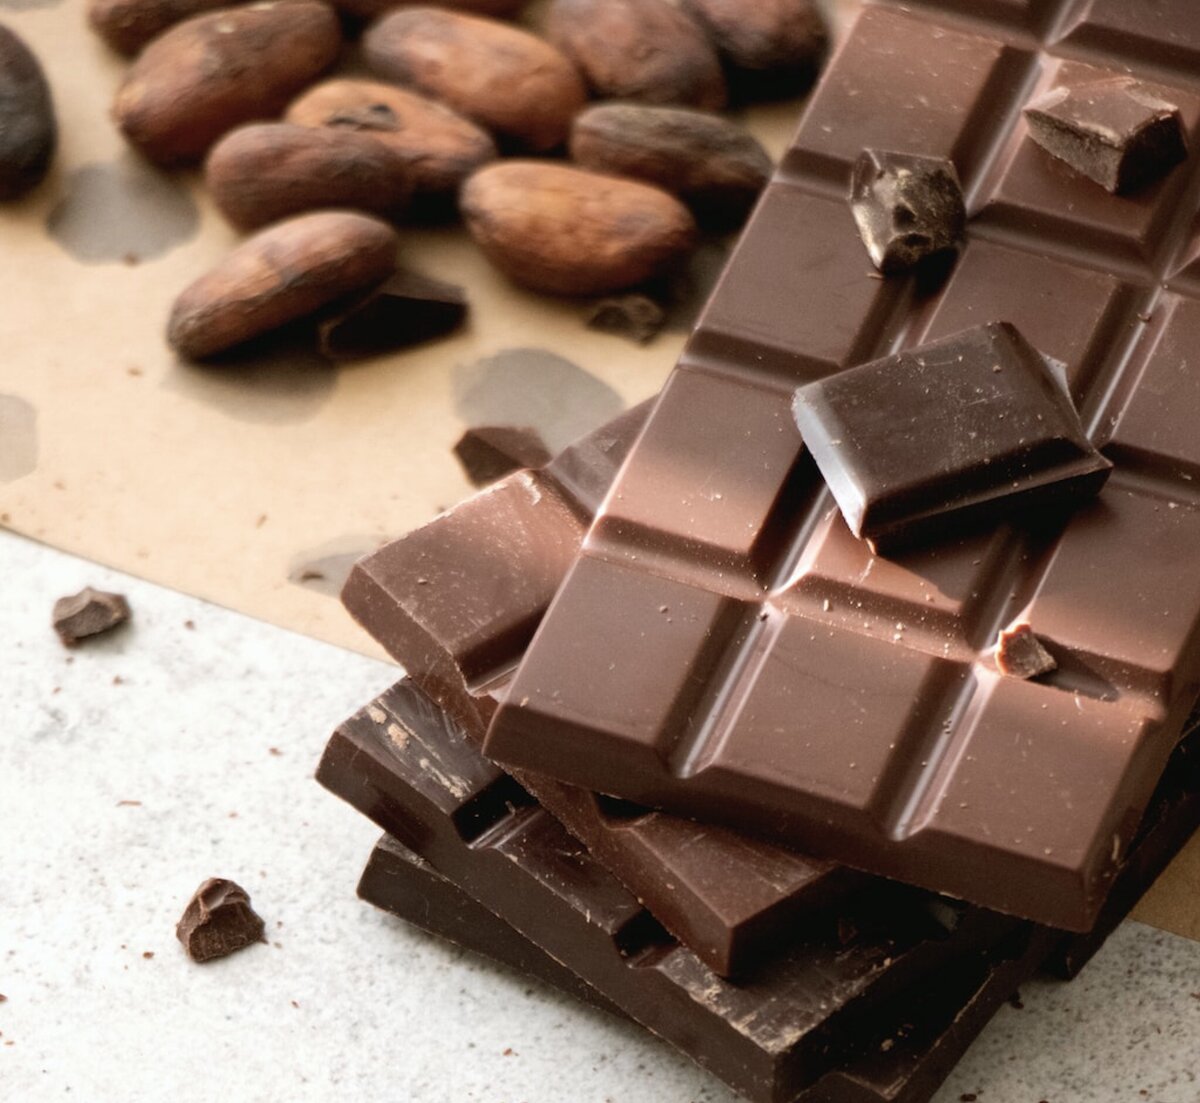 Горячий шоколад - рецепты в домашних условиях от Шефмаркет